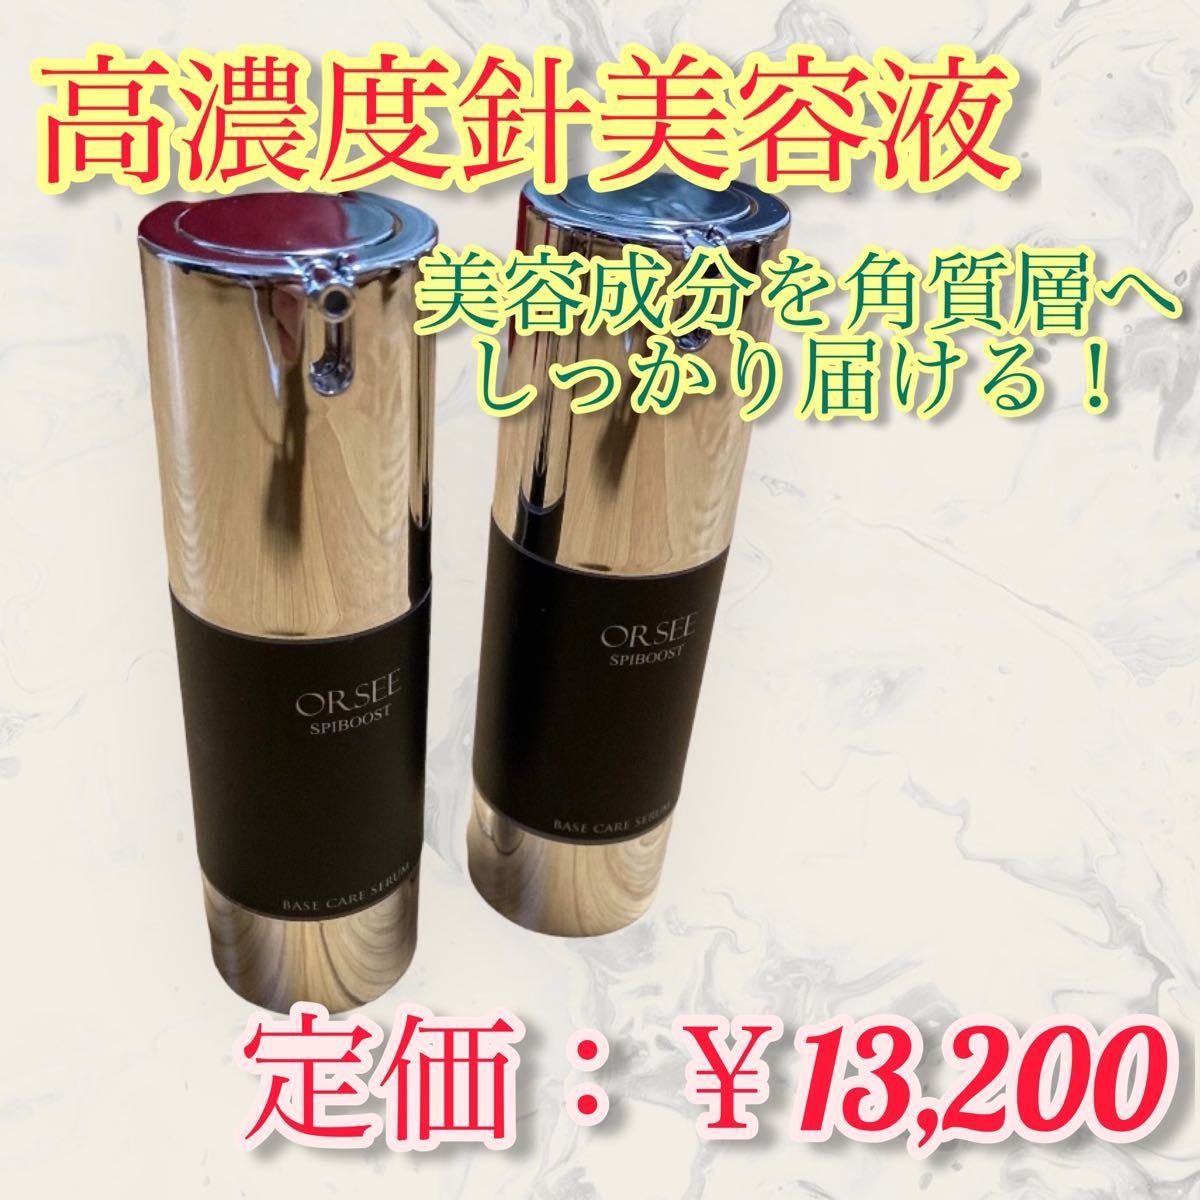 スピキュール 美容液 針 スピブースト 高濃度針美容液 日本製 目元